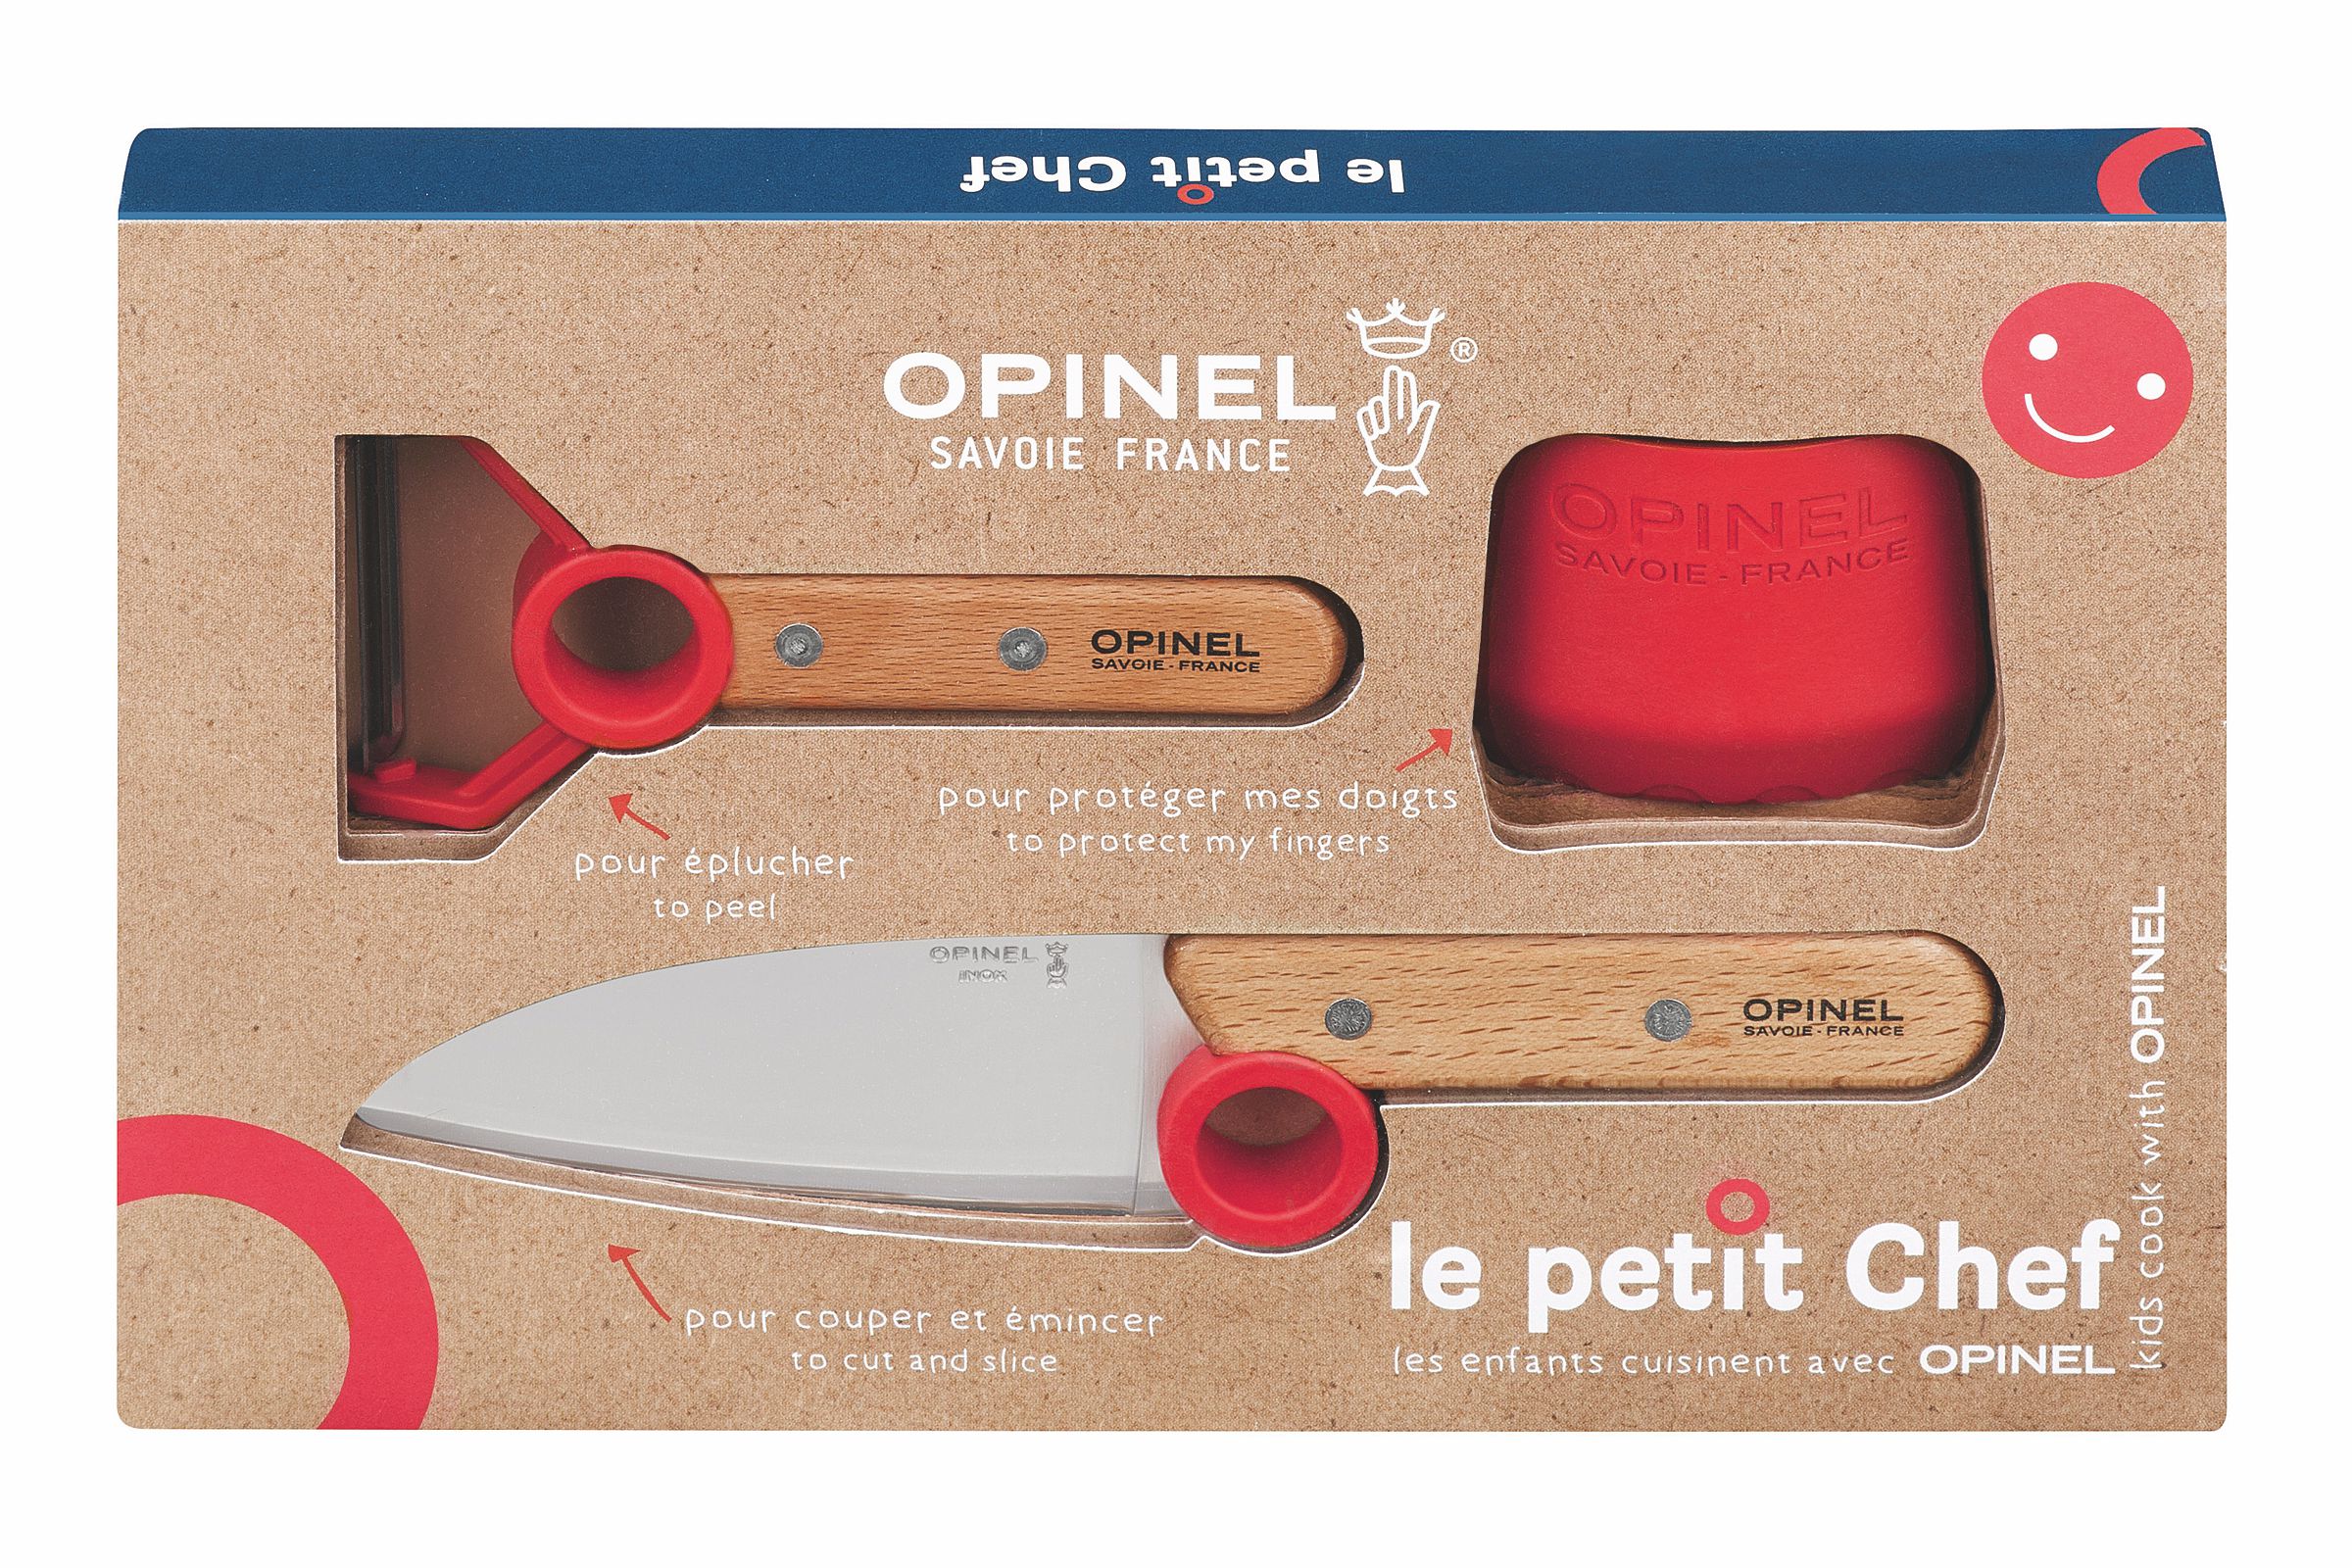 Opinel "Le petit Chef" Kindermesser-Set - 3-teilig - Produktansicht mit Verpackung